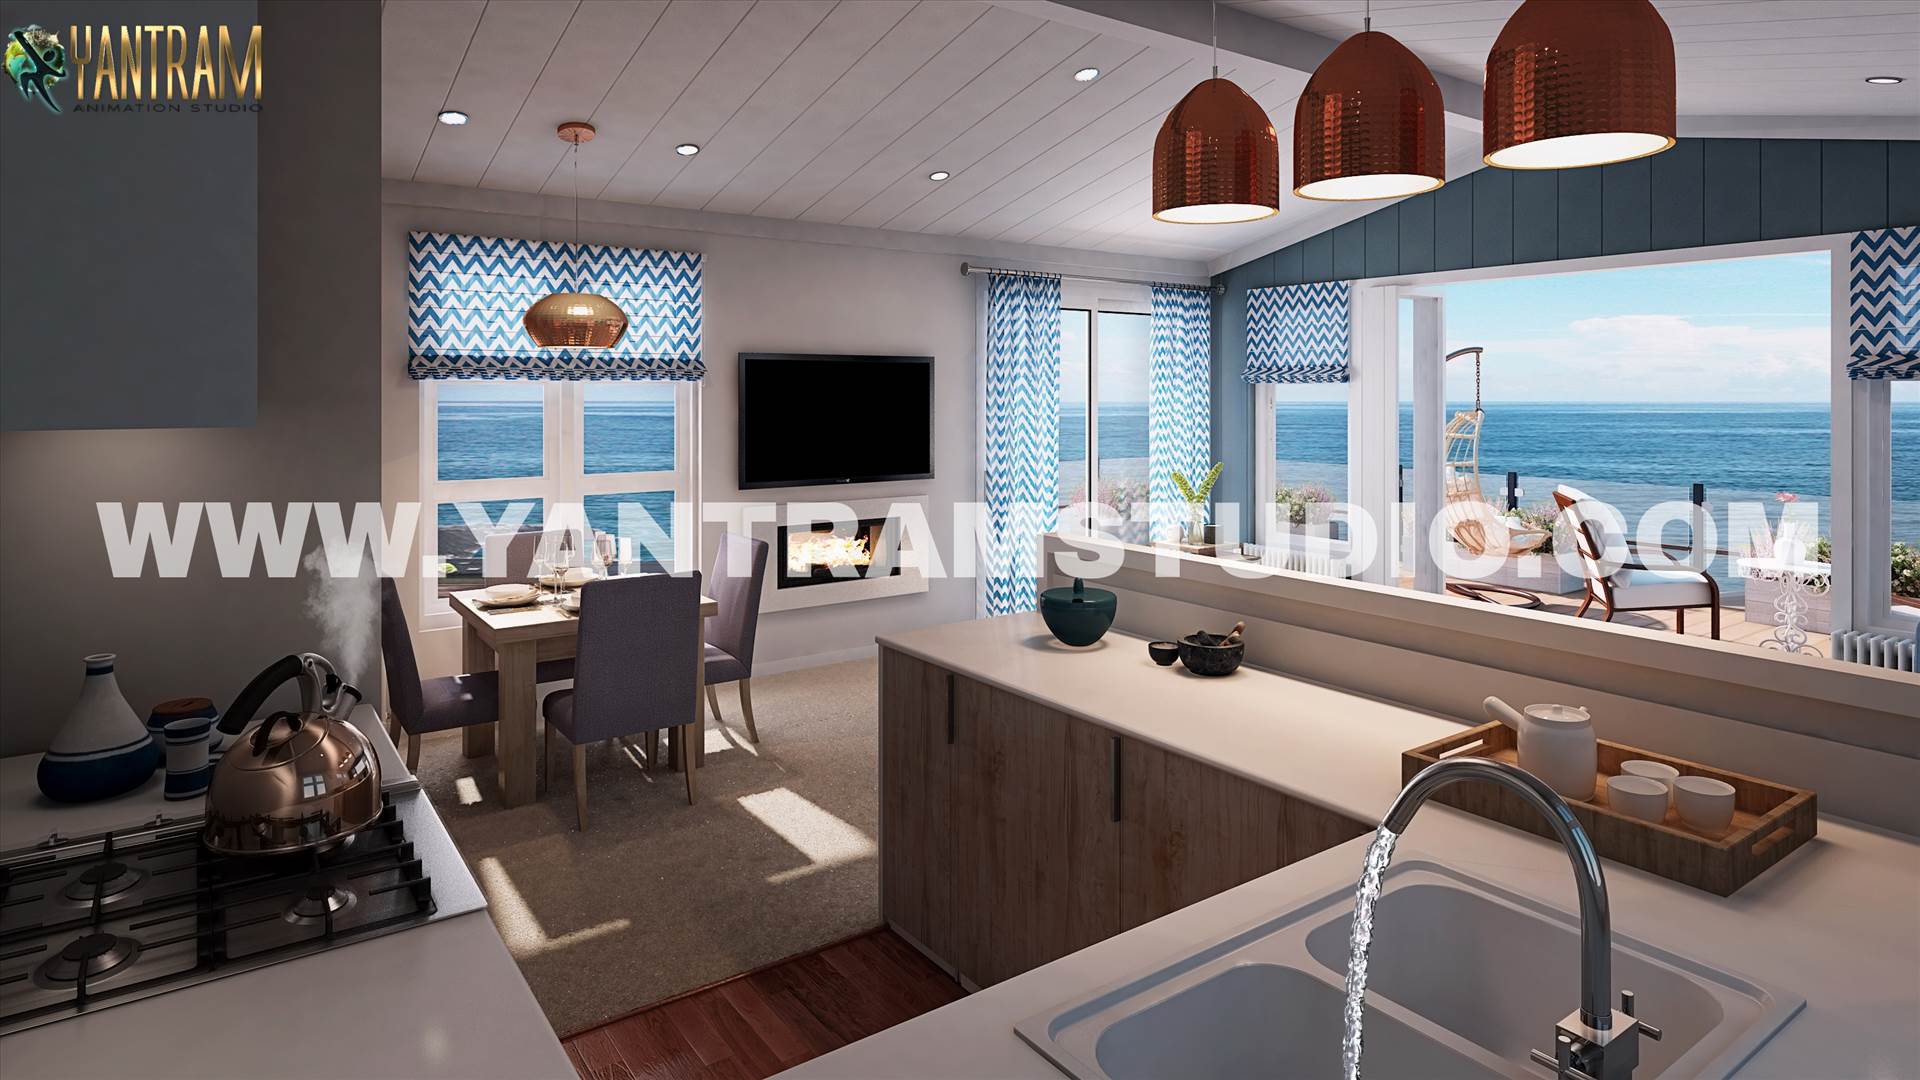 Amazing 3d interior design of kitchen living room by Architectural Visualisation Studio.jpg -  by Yantramarchitecturaldesignstudio